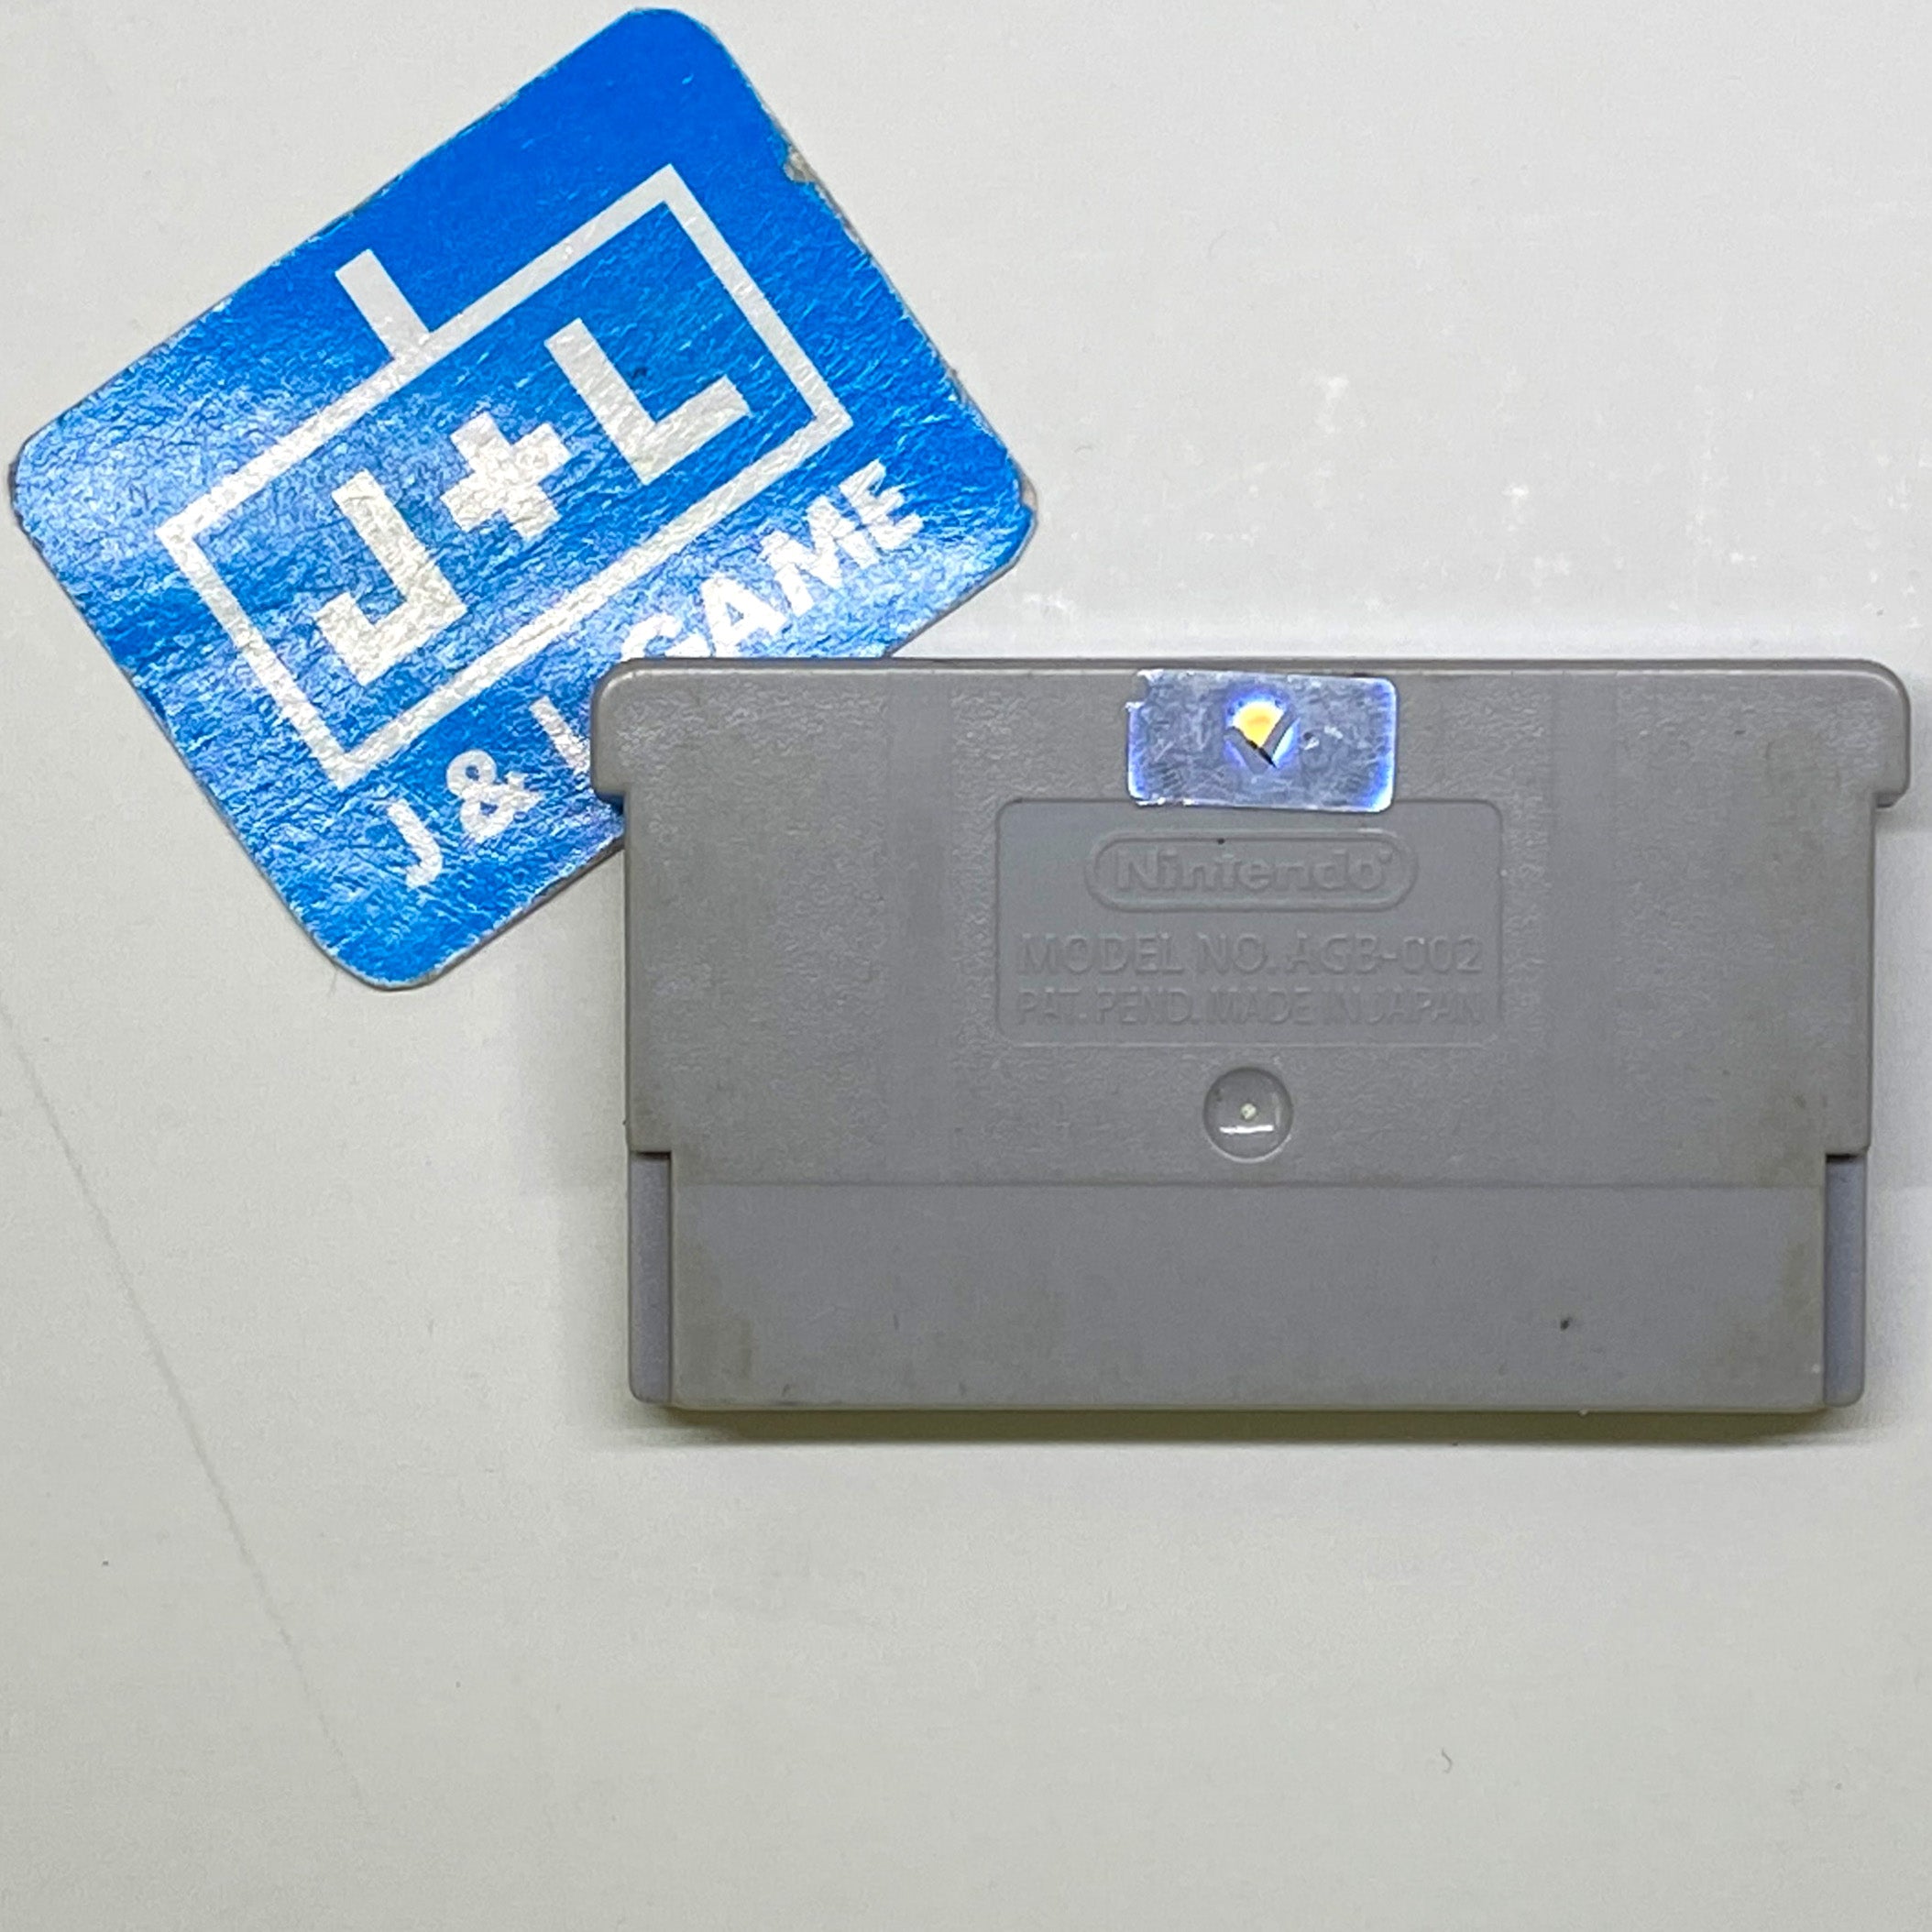 Game Boy Advance Video: Dragon Ball GT - Volume 1 - (GBA) Game Boy Advance [Pre-Owned] Video Games Majesco   